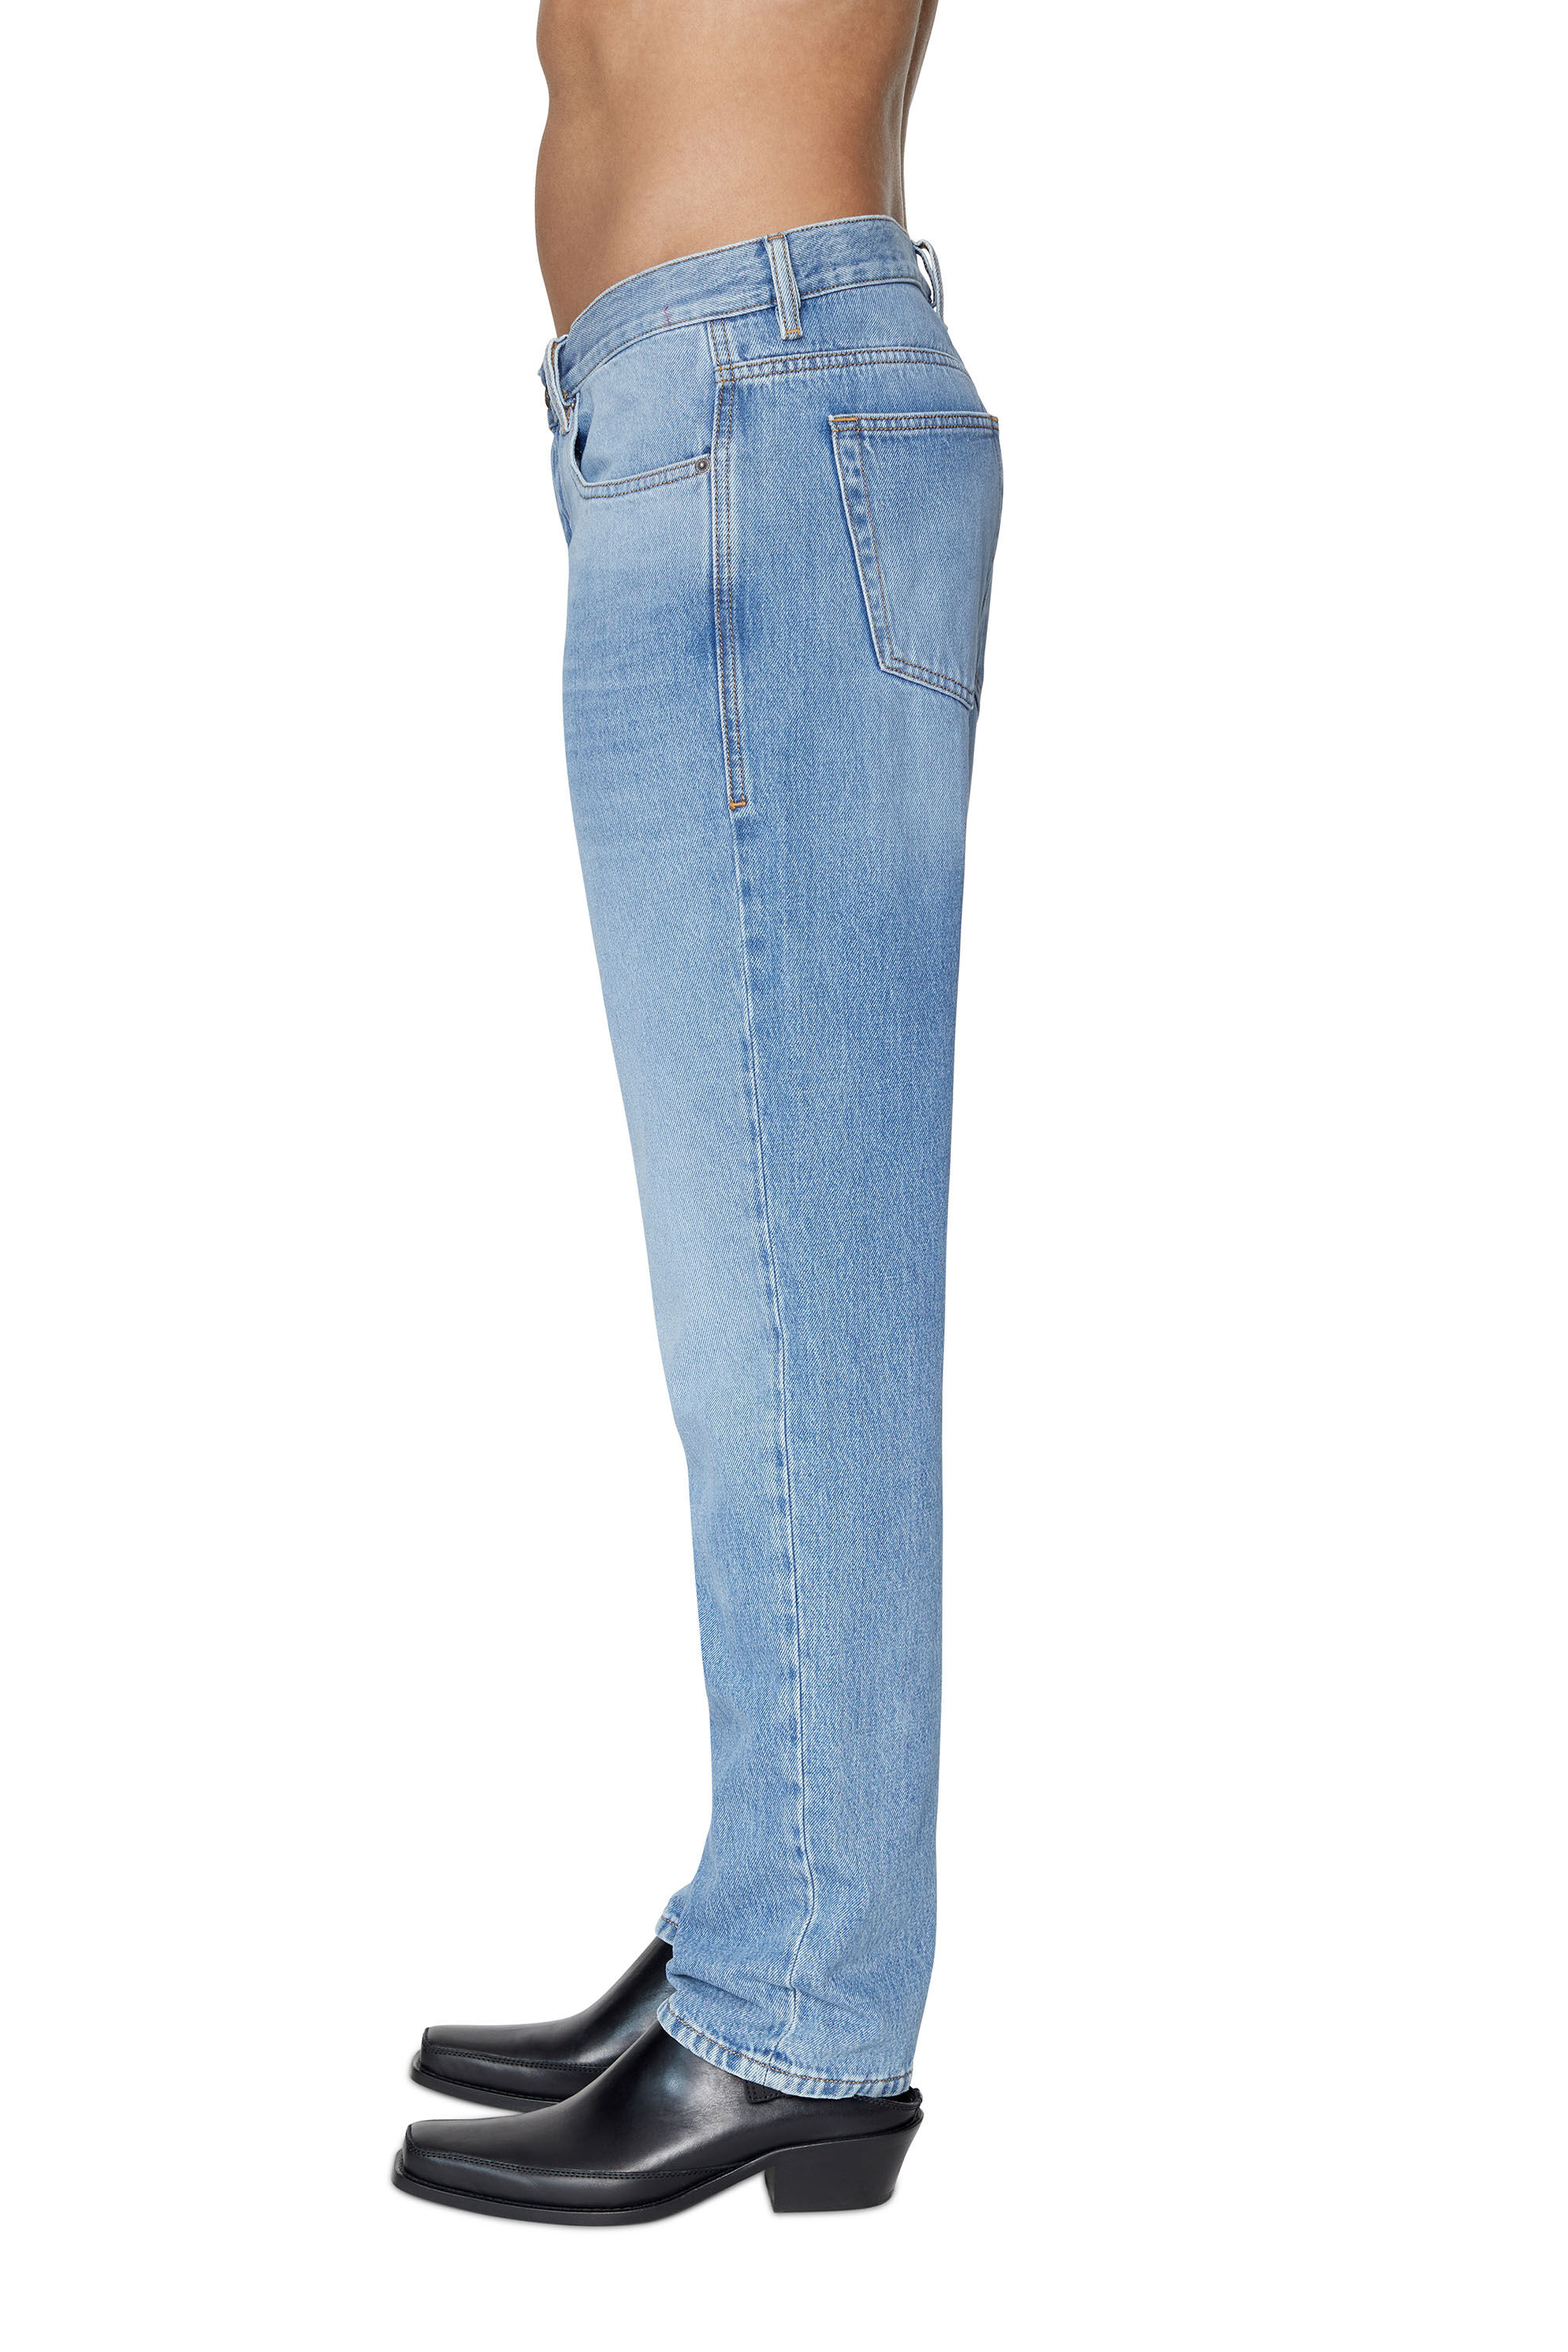 39,5 cm Diesel Hommes Jeans Bleu Taille W 30 L 32 100% coton Taille 